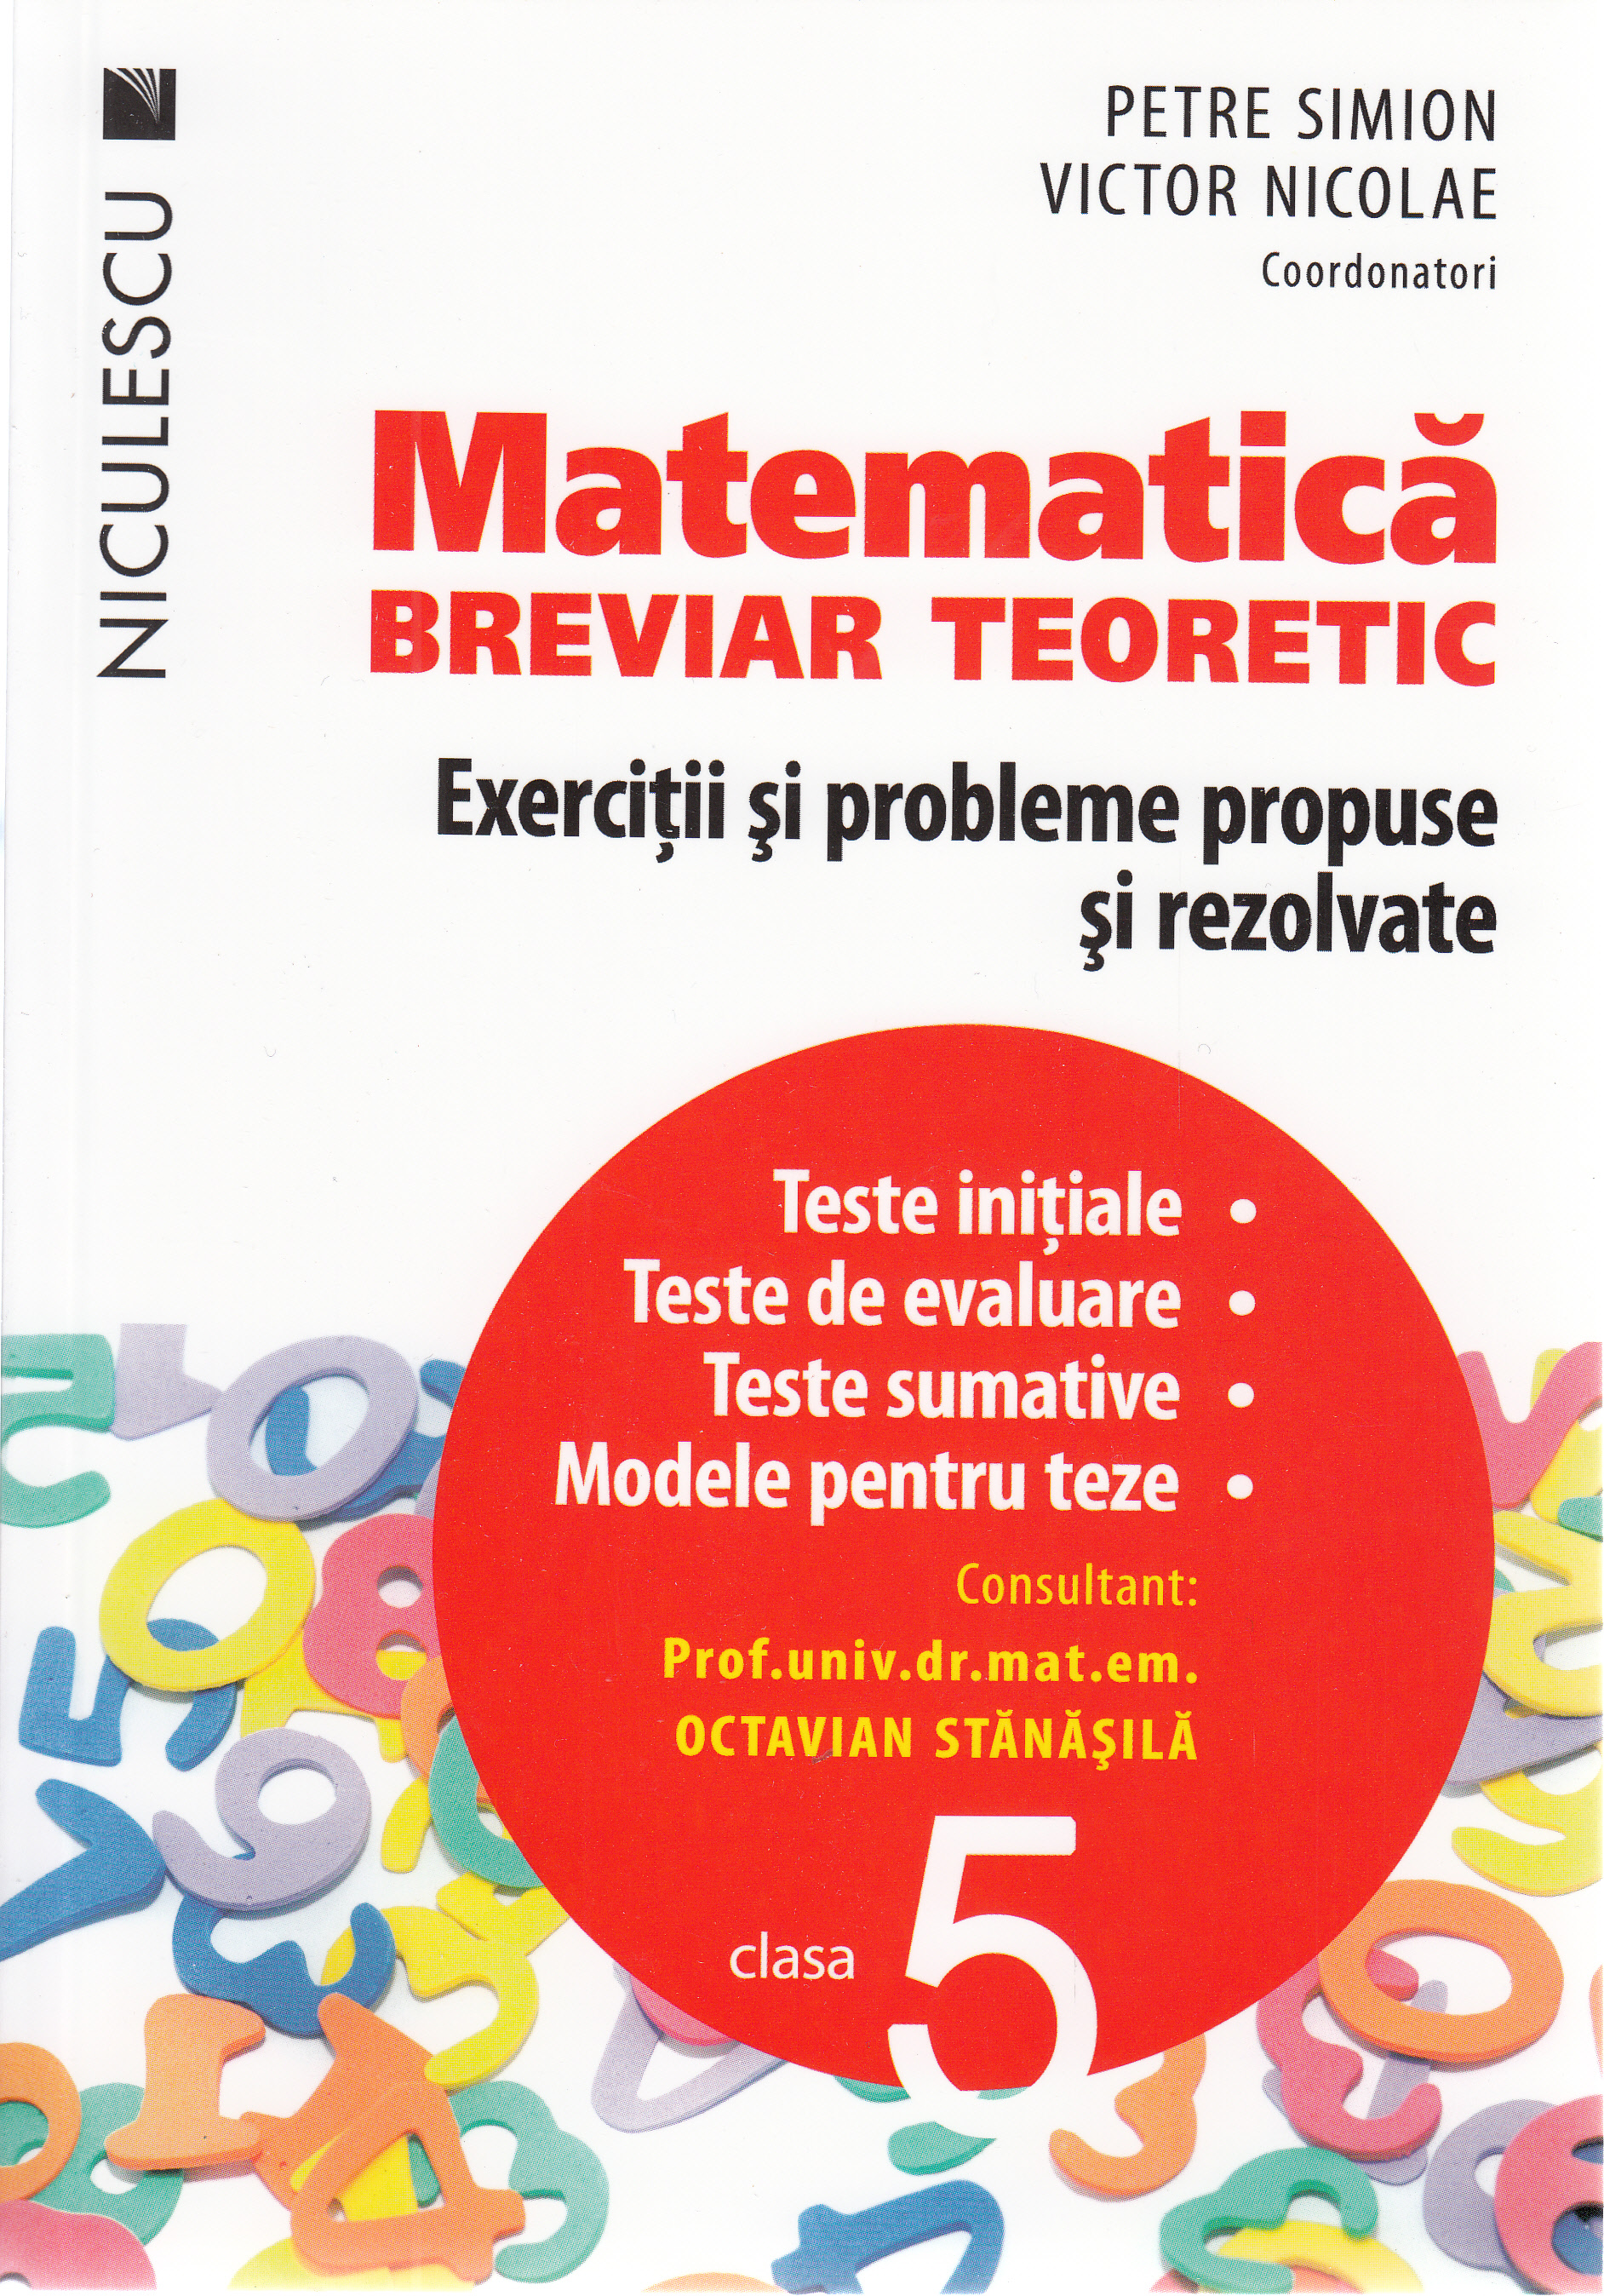 Matematica - Clasa 5 - Breviar teoretic - Petre Simion, Victor Nicolae